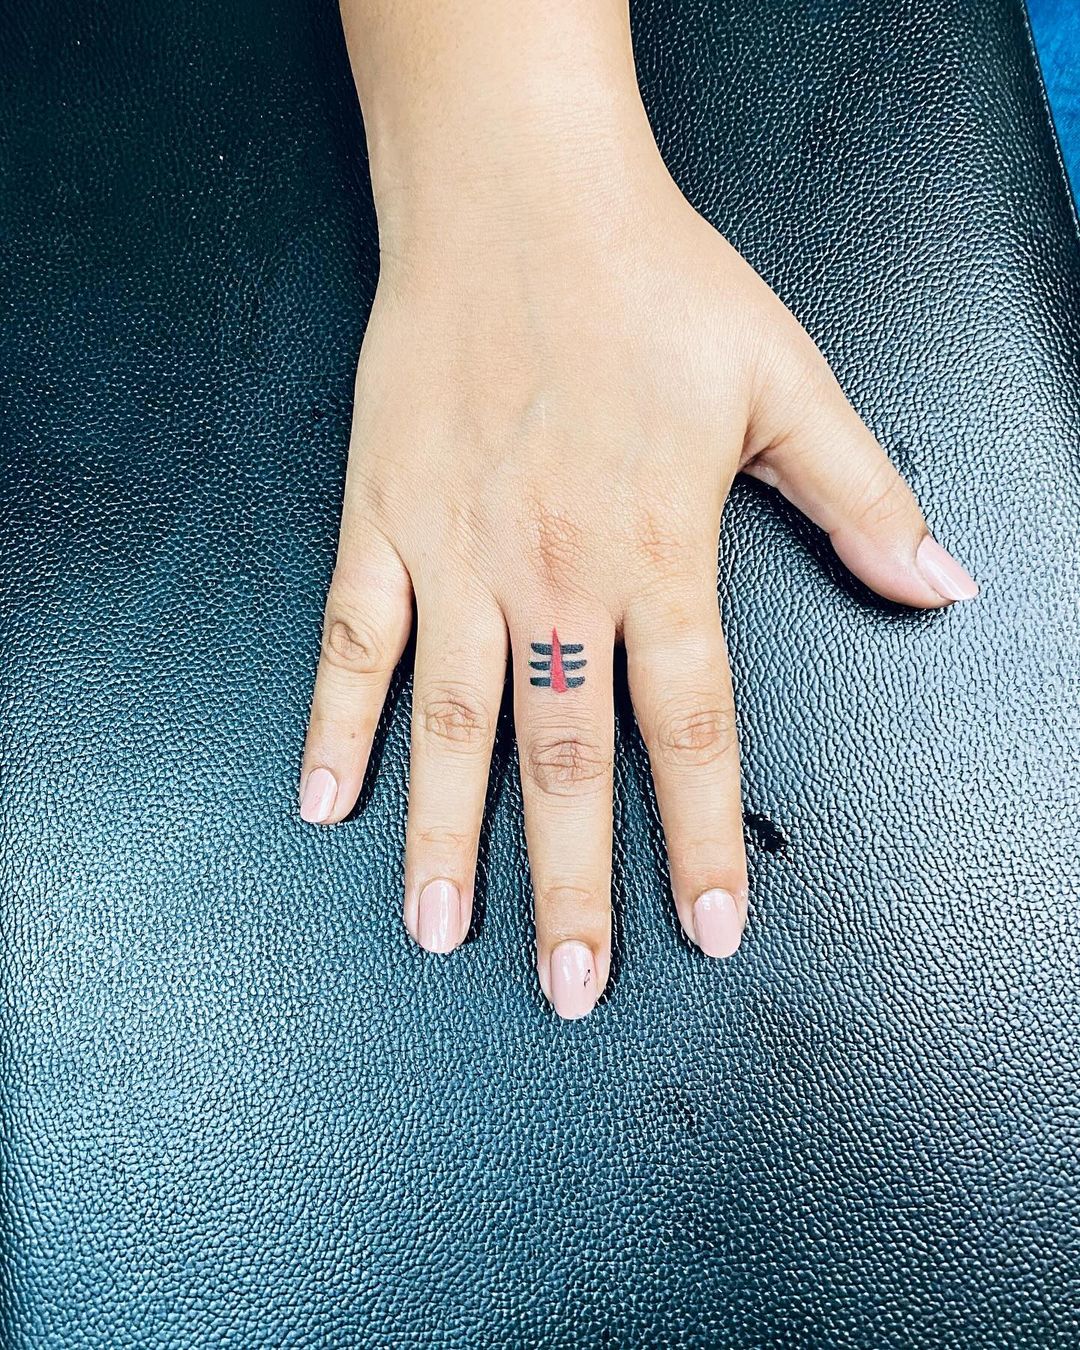 tatuagem de mão com símbolo de shiva